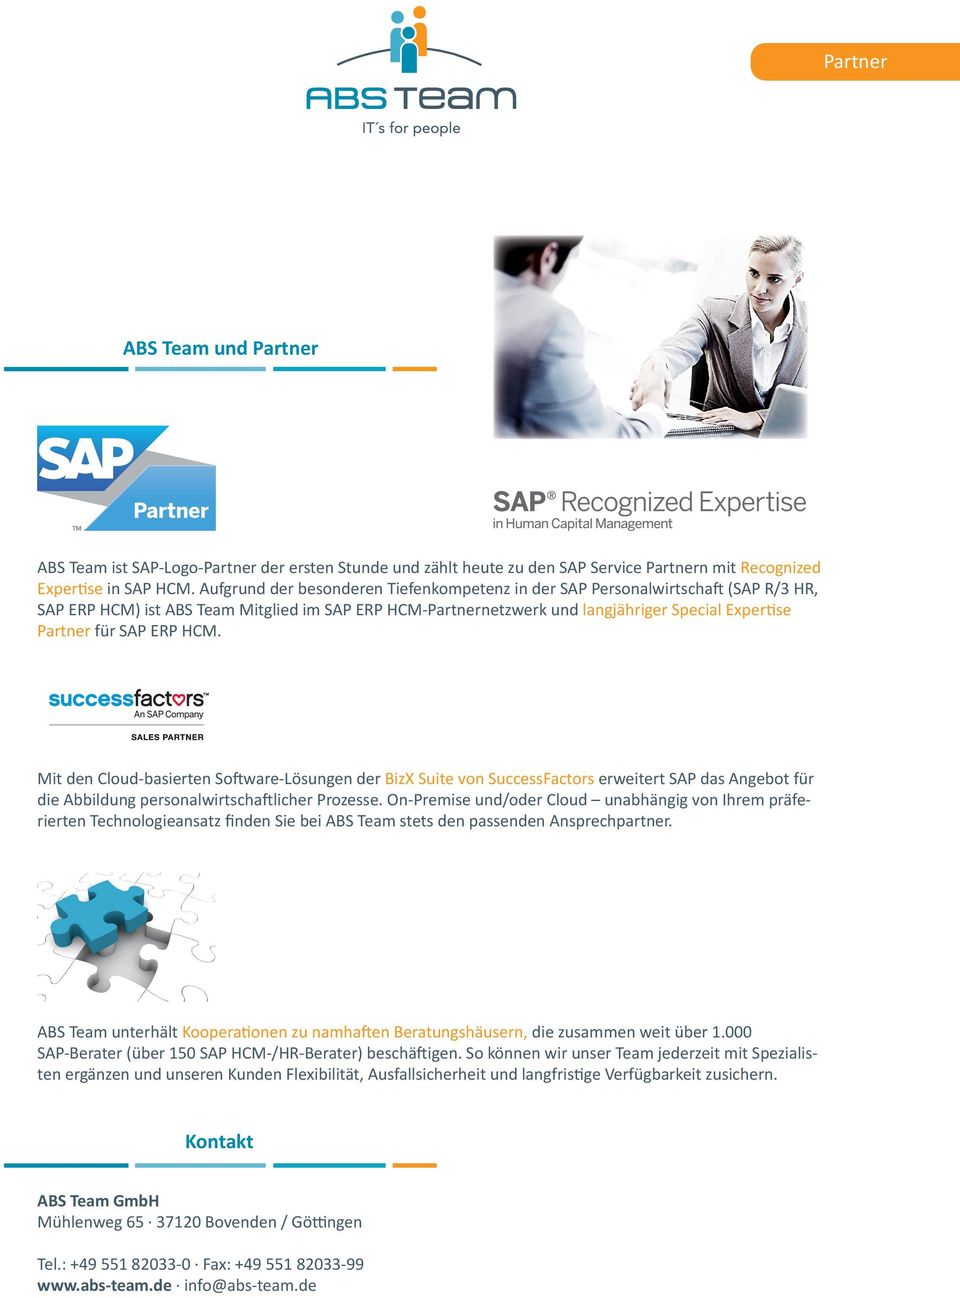 ERP HCM. Mit den Cloud-basierten So ware-lösungen der BizX Suite von SuccessFactors erweitert SAP das Angebot für die Abbildung personalwirtscha licher Prozesse.